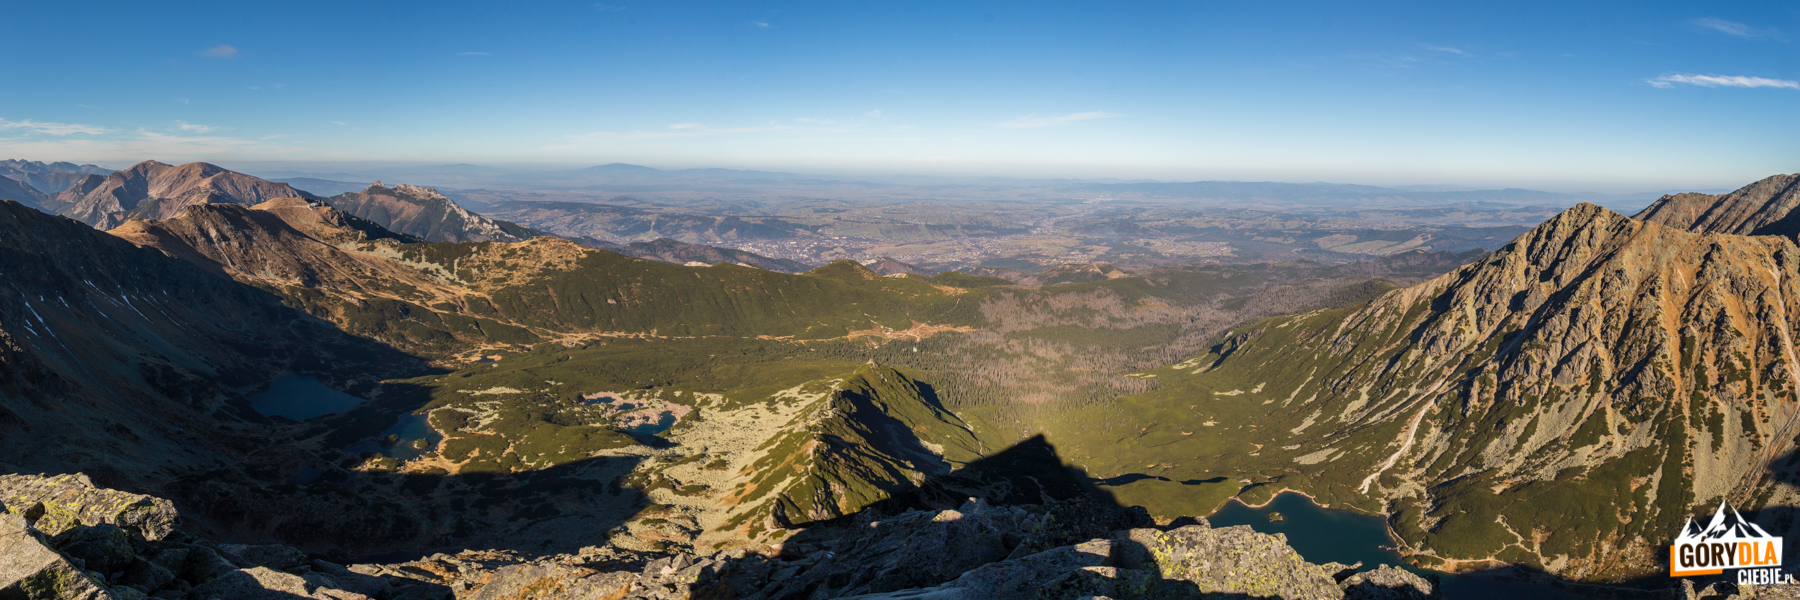 Dolina Gąsienicowa - widok ze szczytu Kościelca (2155 m)